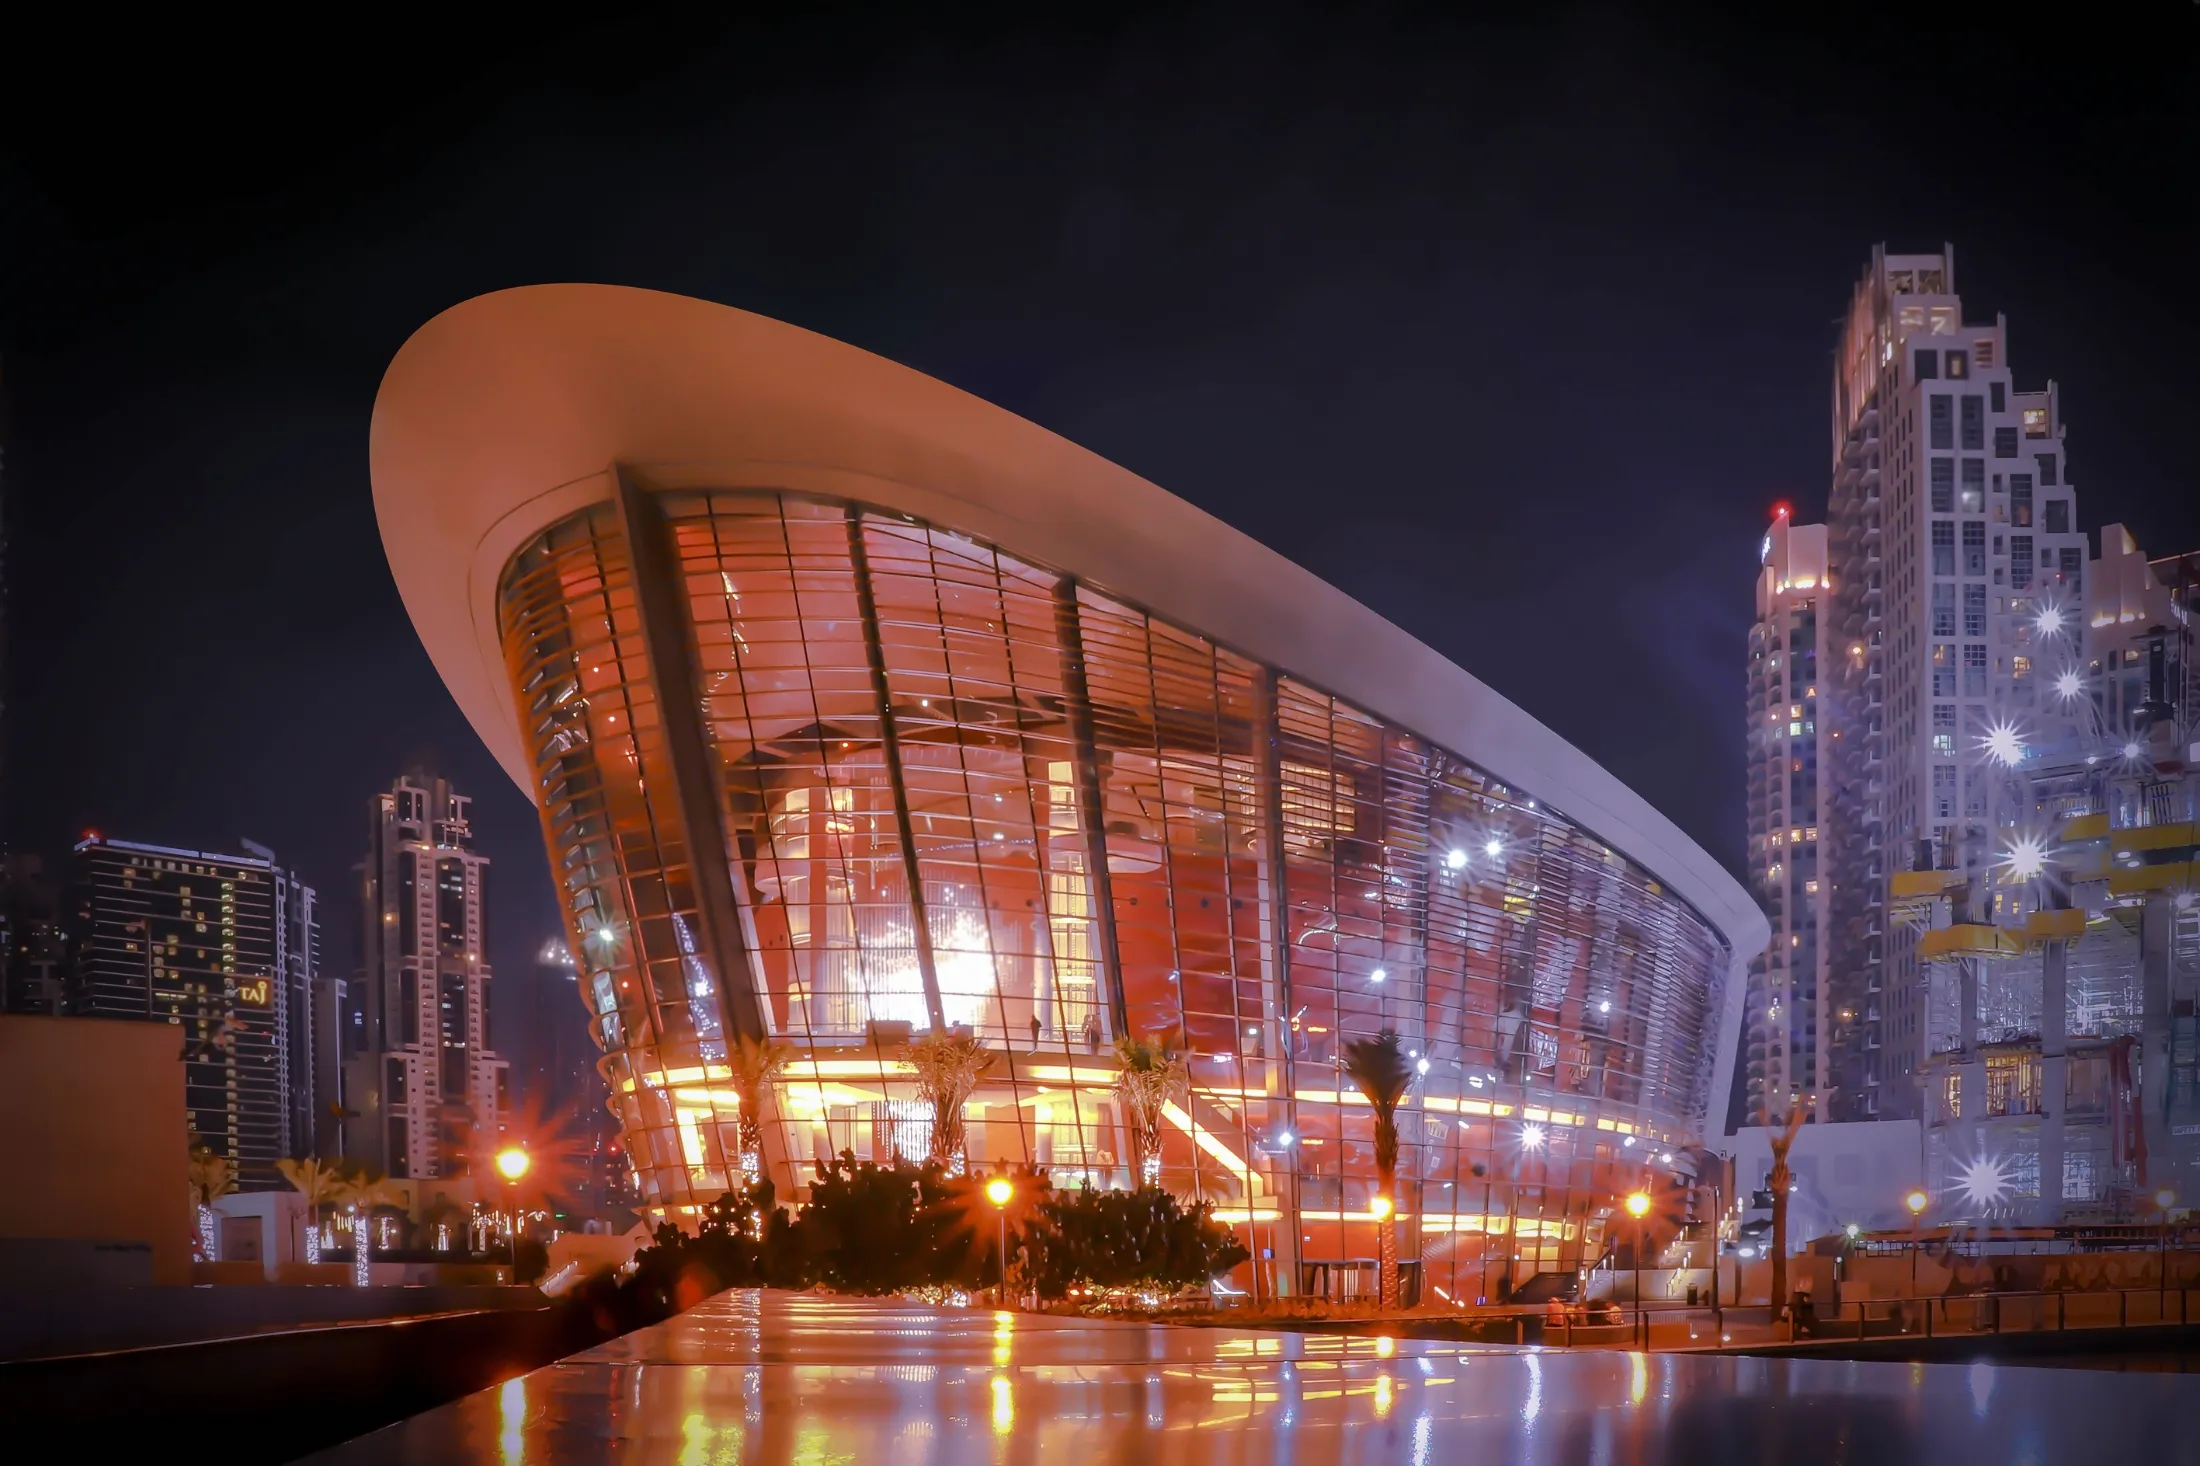 The Dubai opera